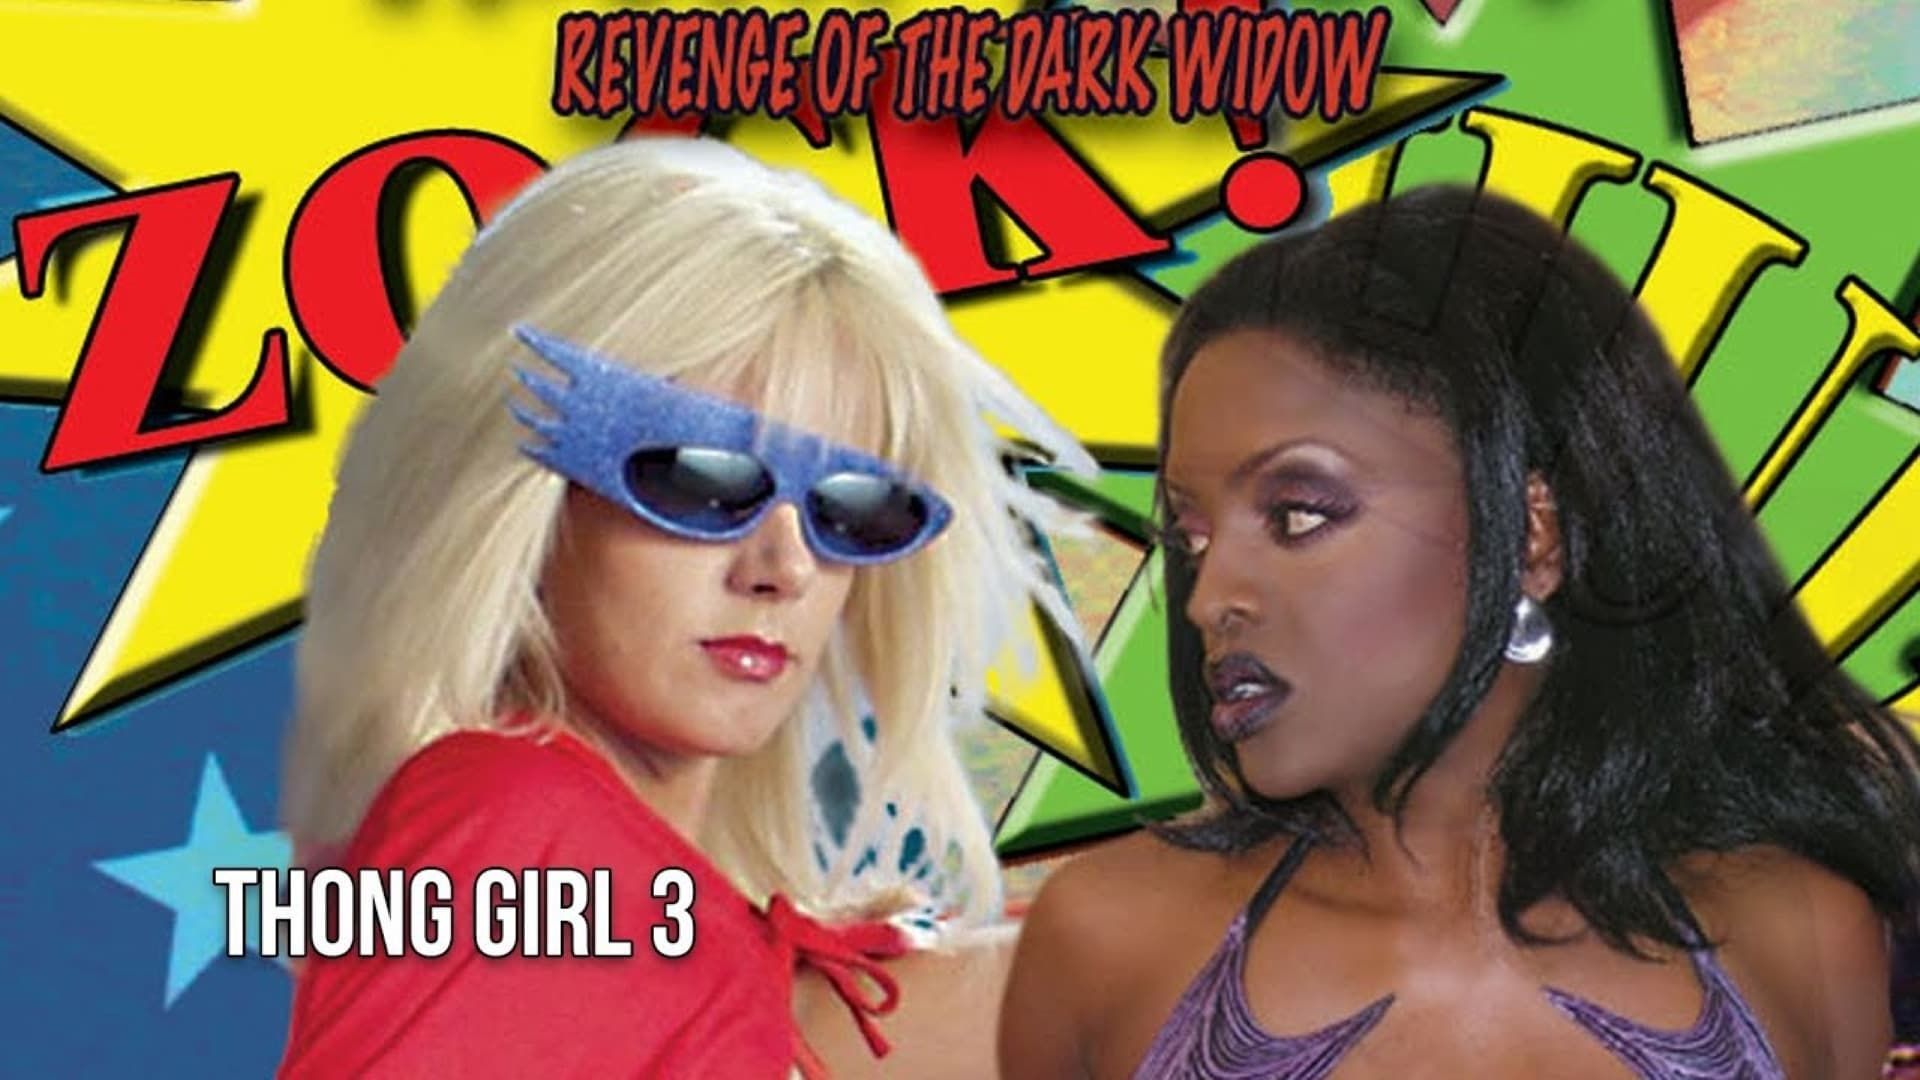 Thong Girl 3: Revenge of the Dark Widow background